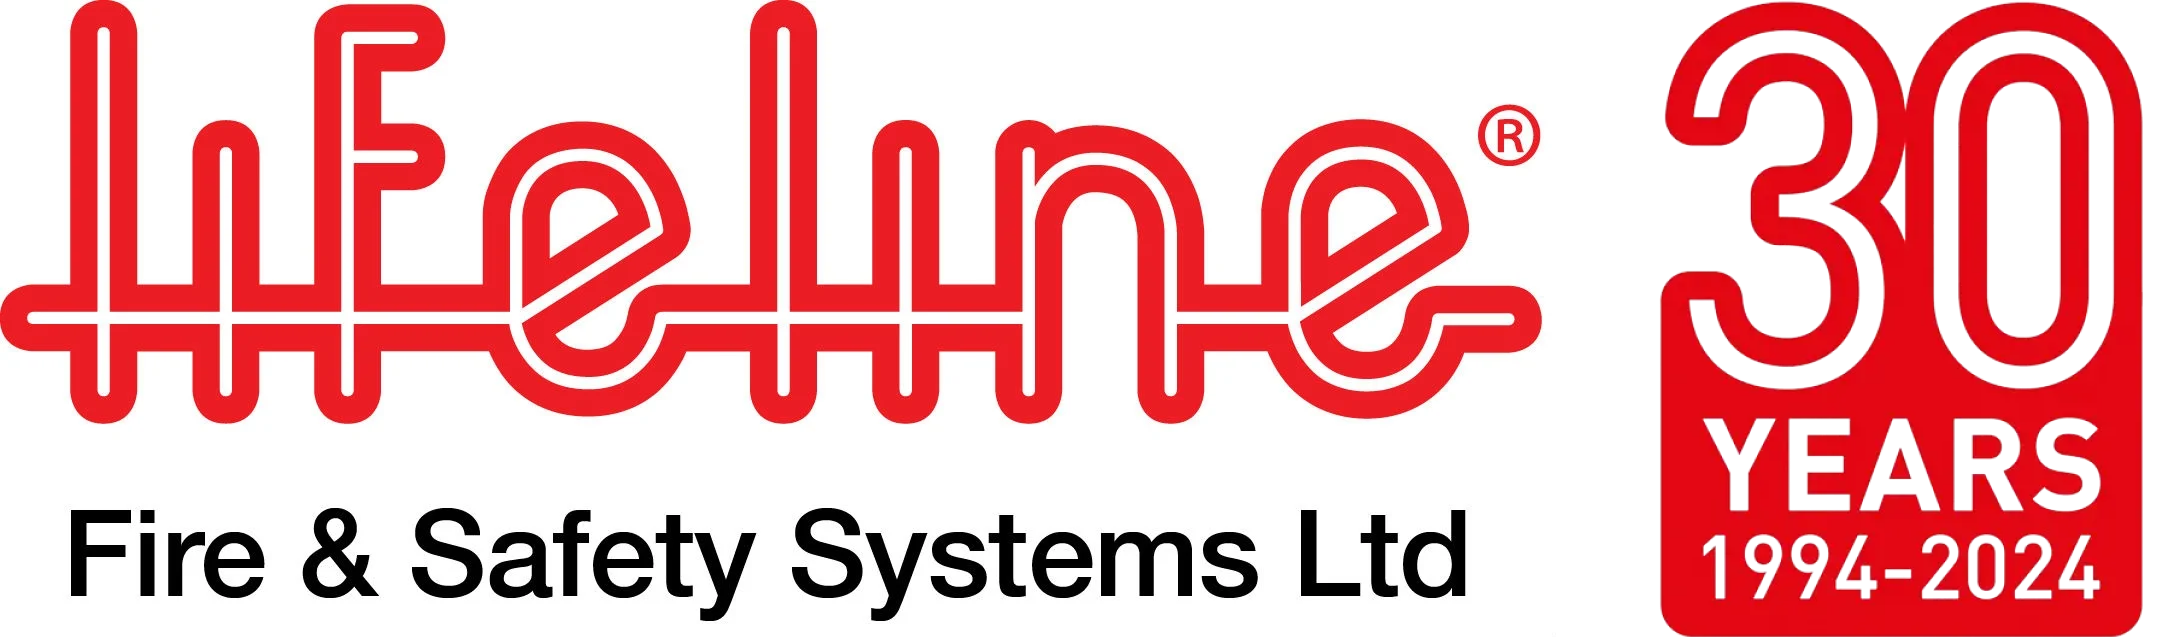 Lifeline logo 30 Years